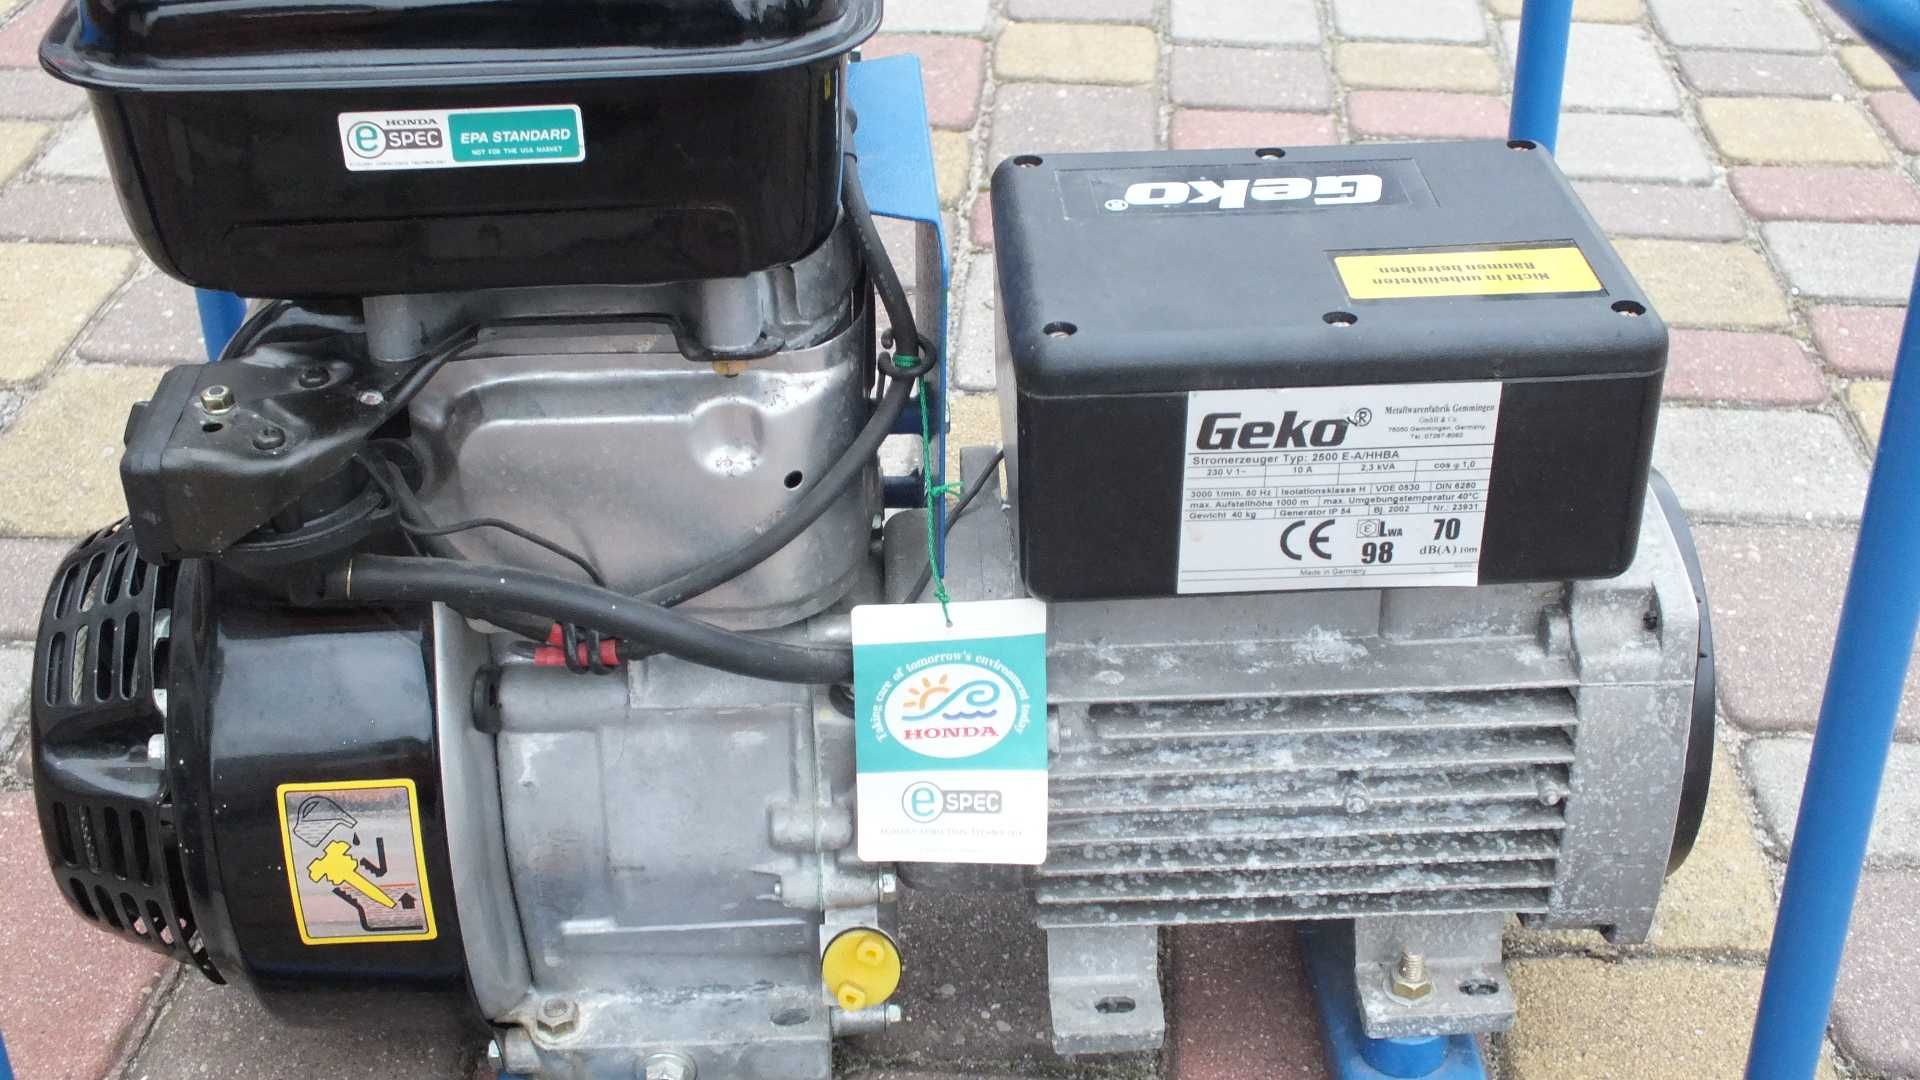 Agregat prądotwórczy Honda Geko 2500 E-A/HHBA